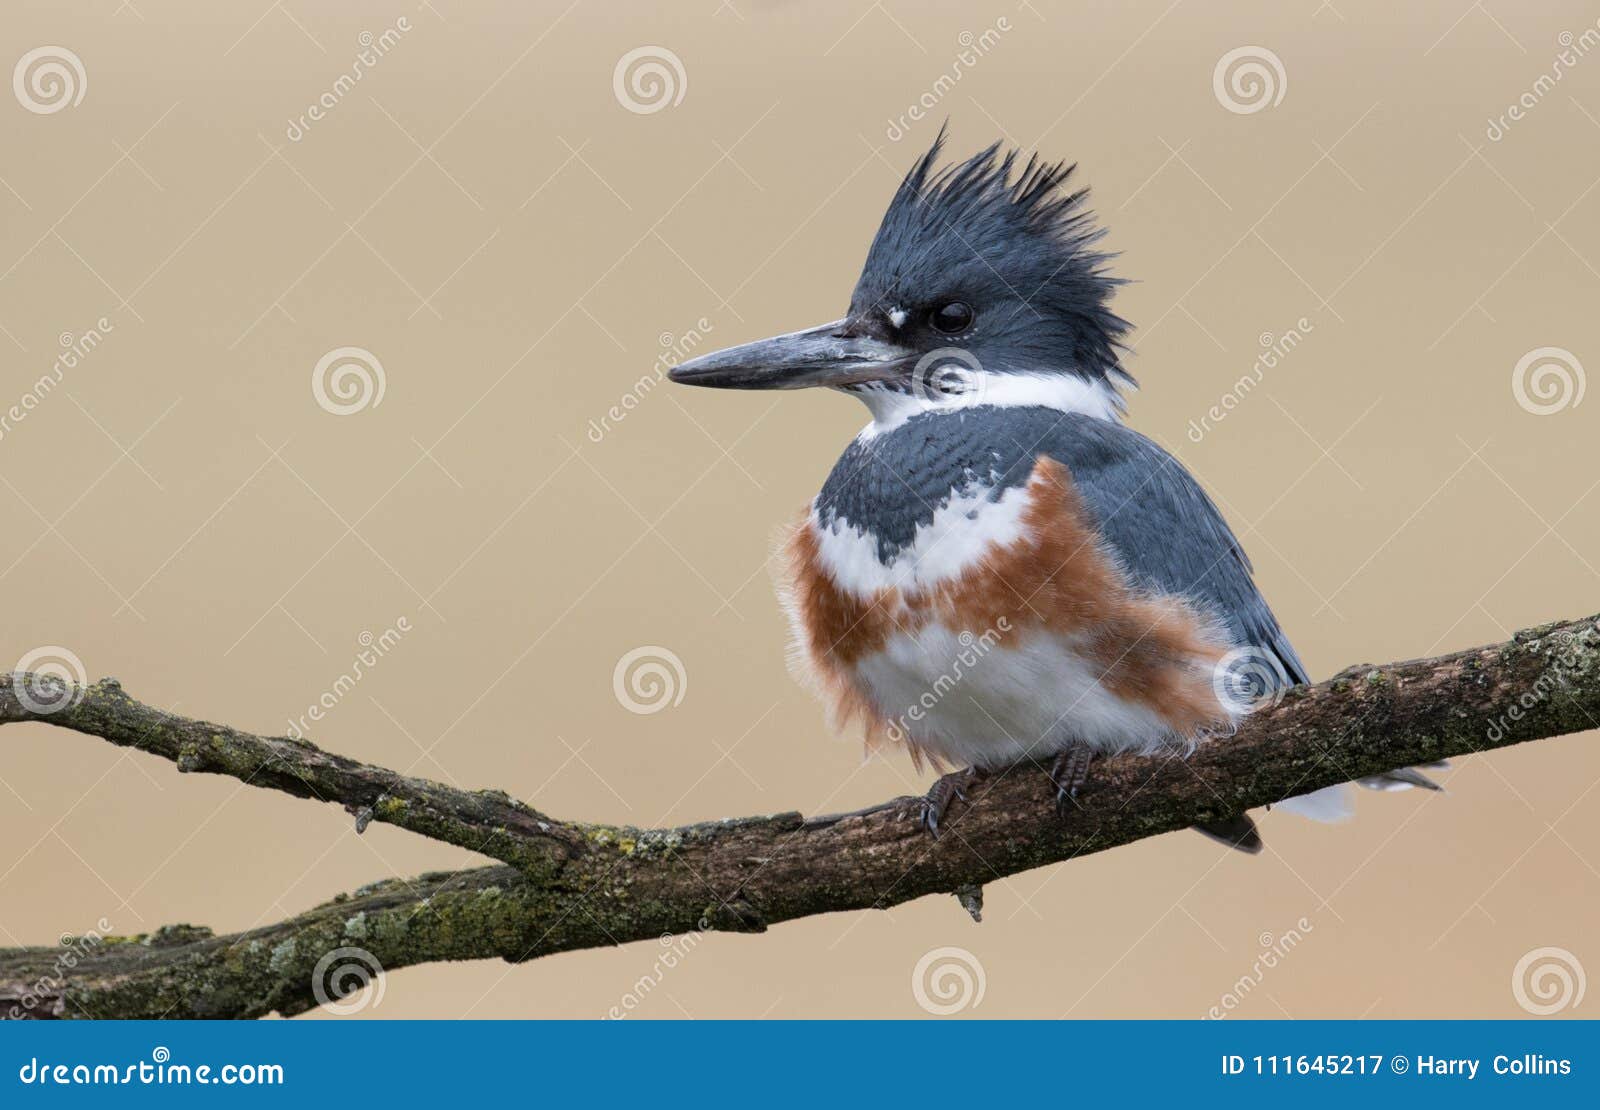 Belted Kingfisher stock image. Image of florida, blue - 111645217